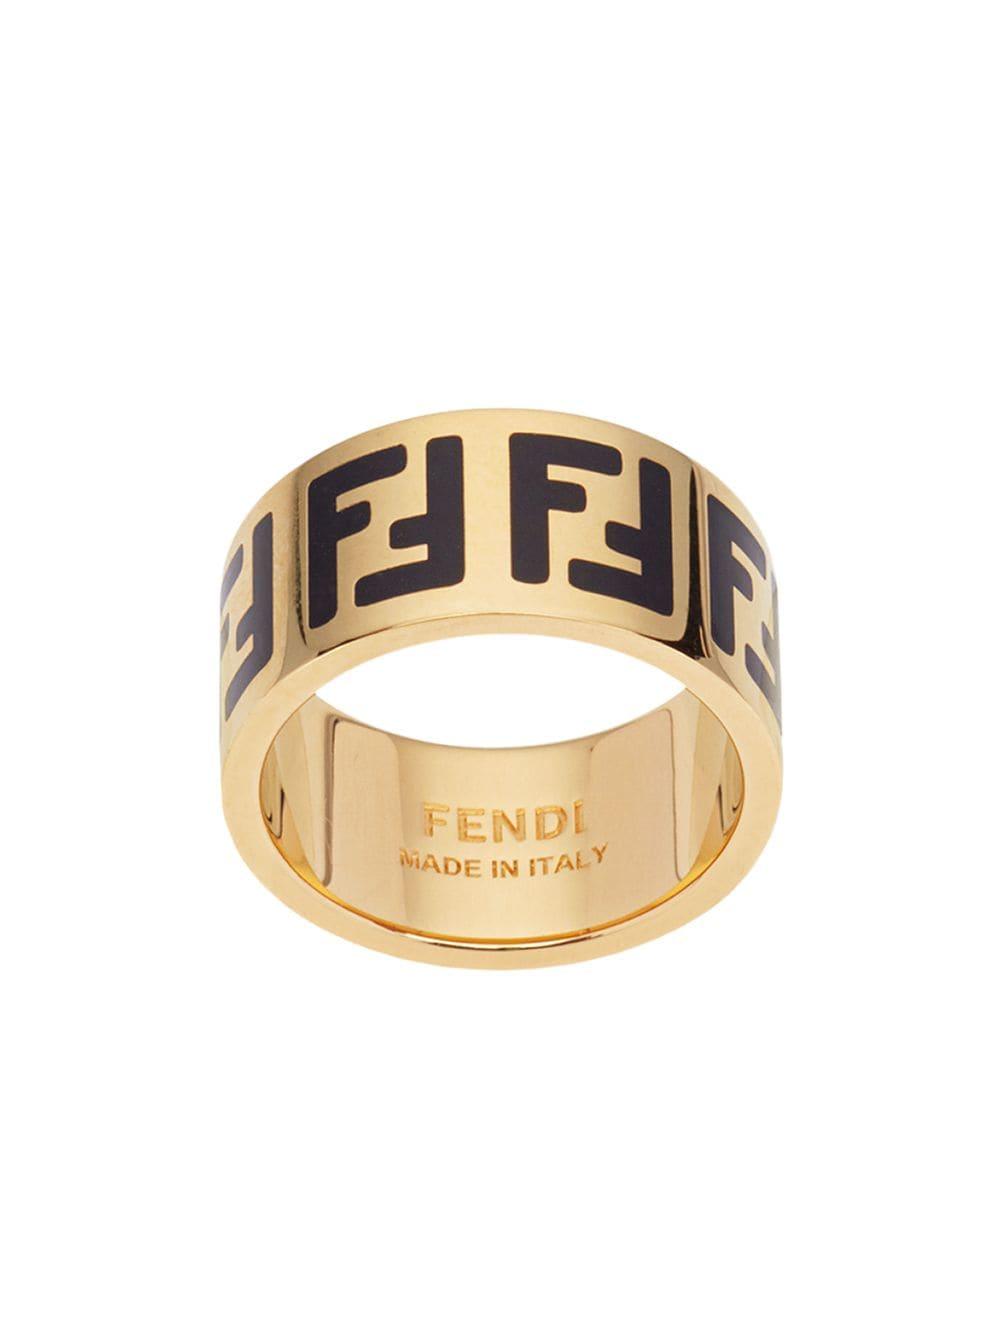 Fendi Monogram Pattern Ring in Gold (Metallic) - Lyst